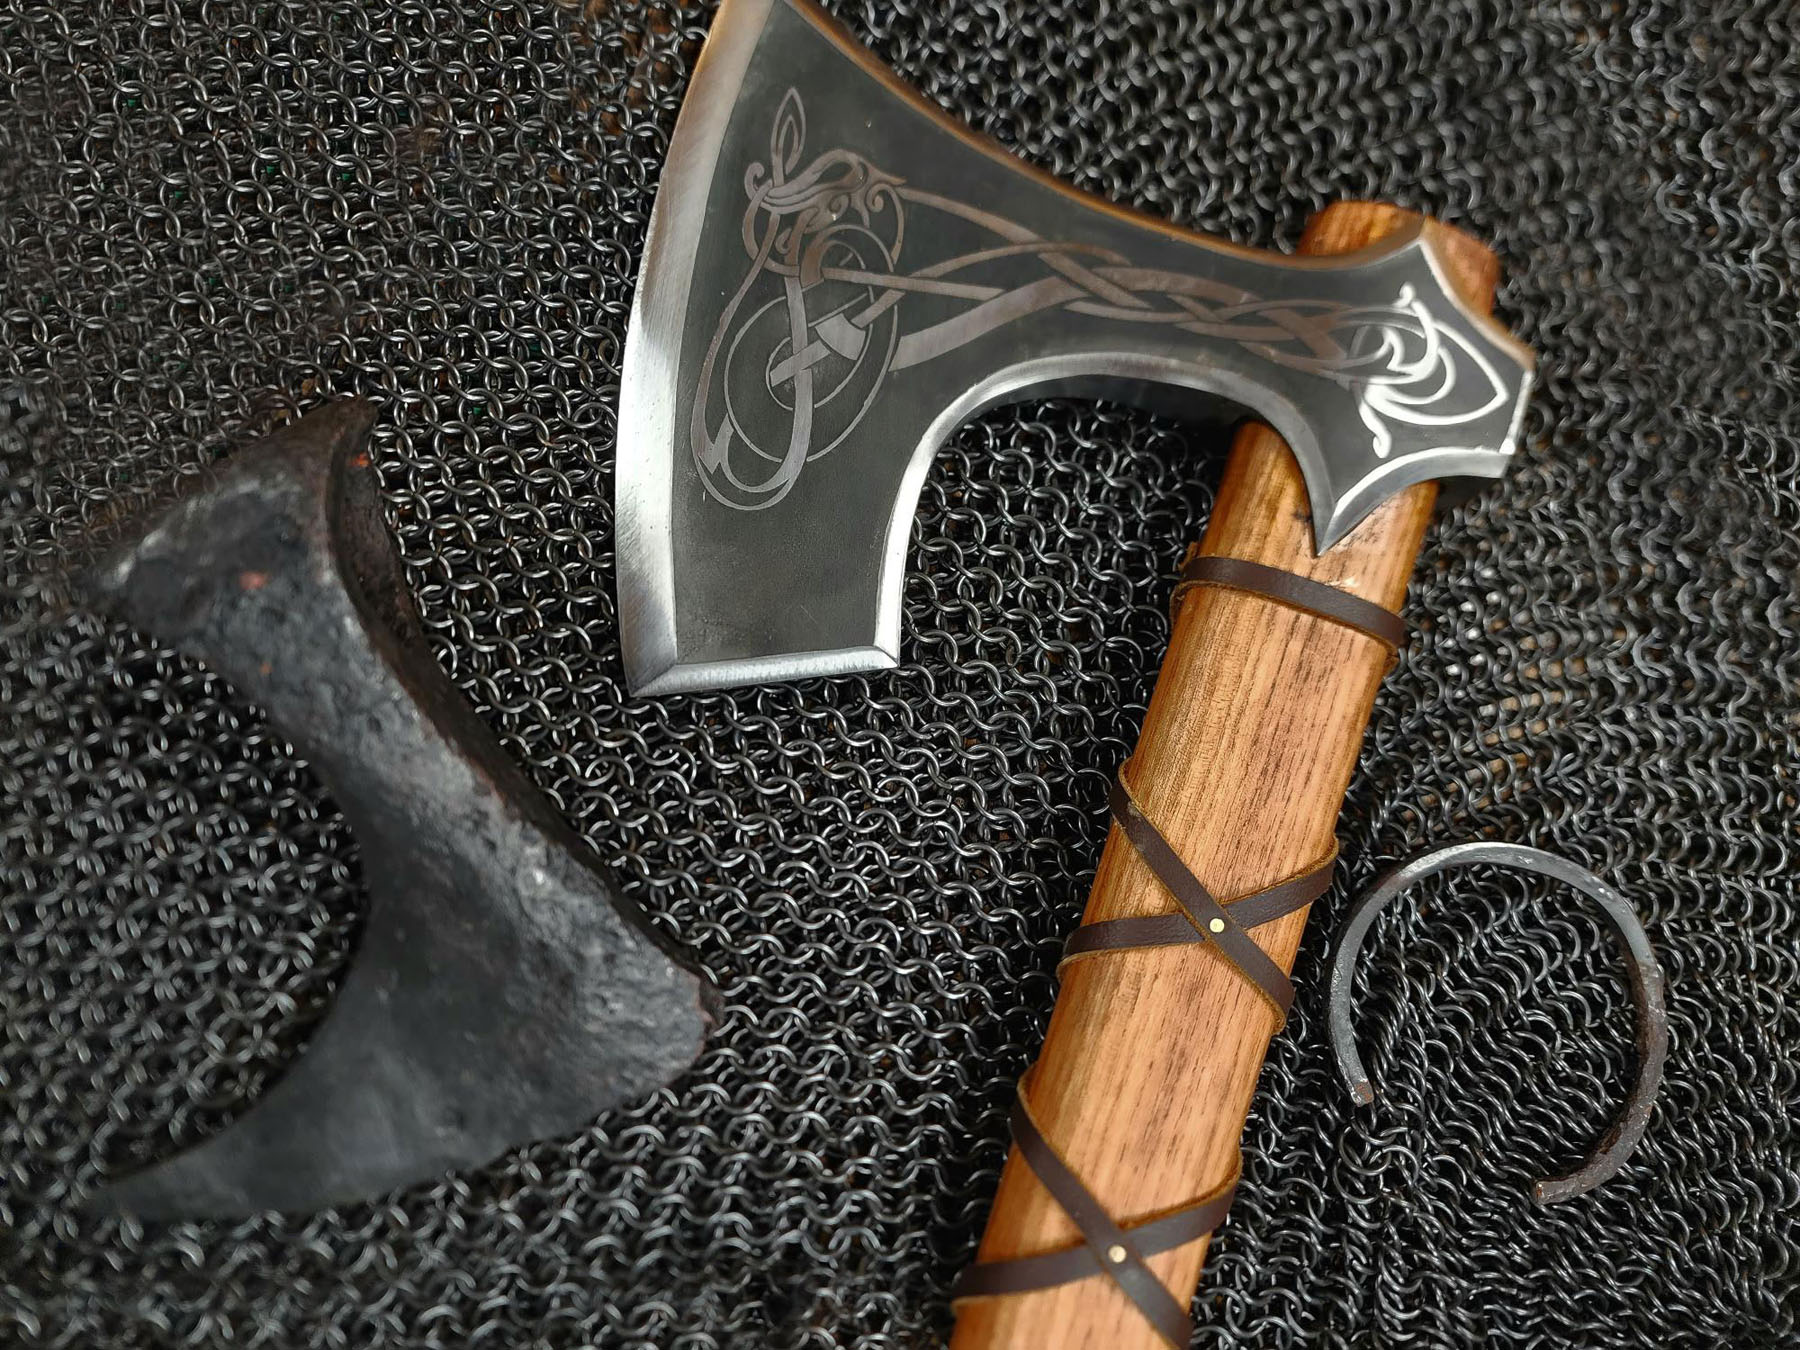 The “Birger” Viking Axe